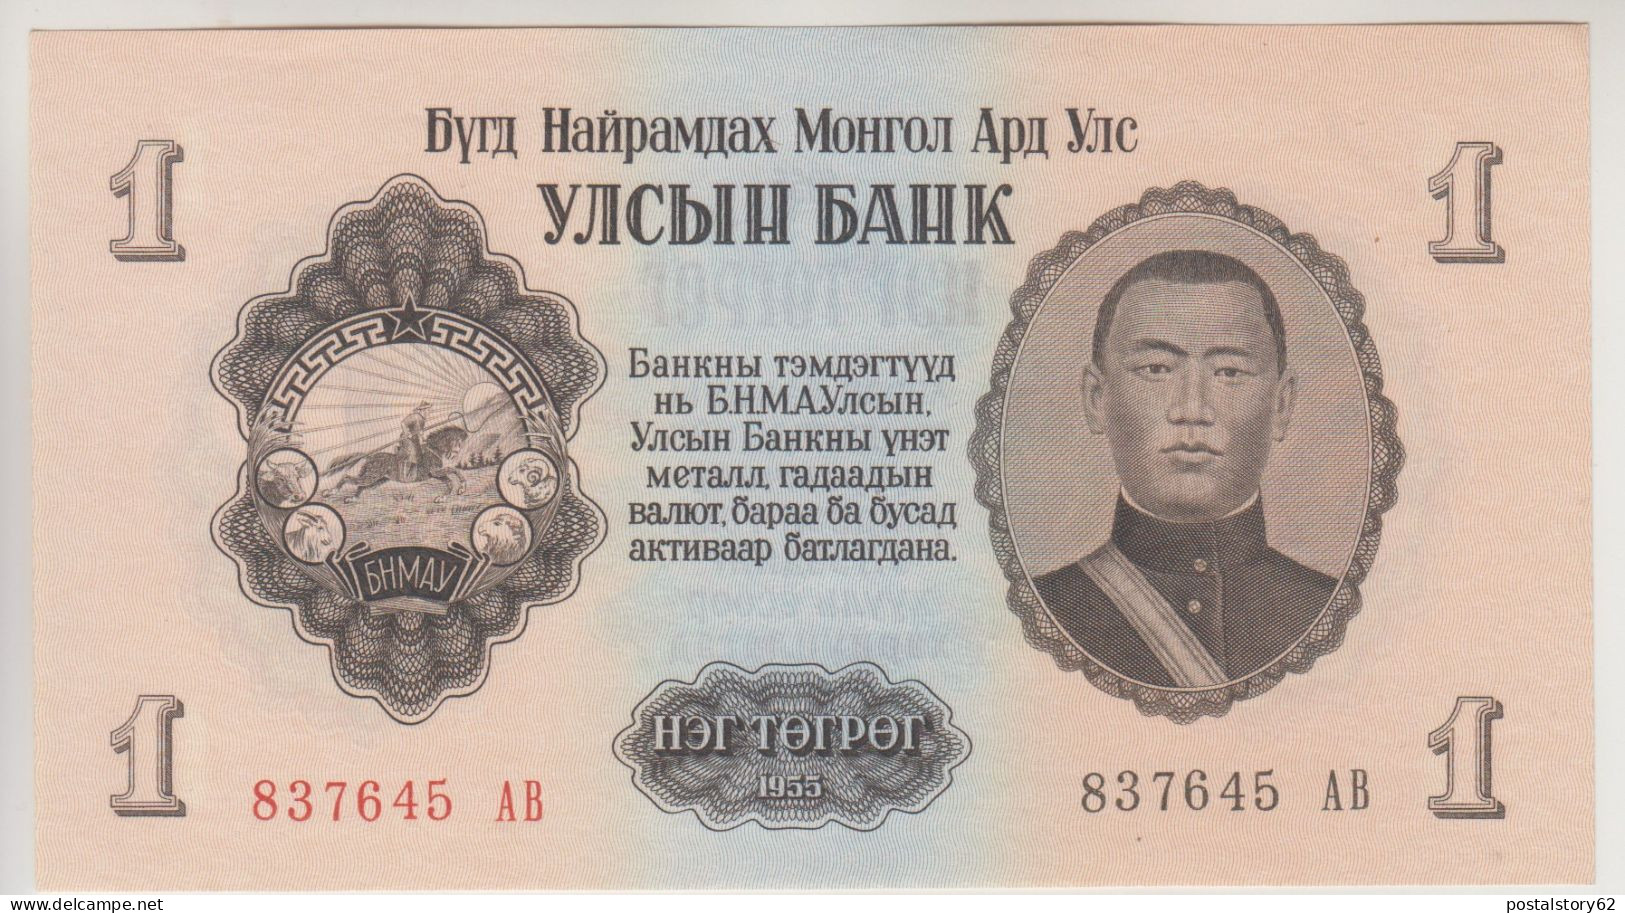 Mongolia, 1 Tugrik 1955 FDS Pick # 28 - Mongolia